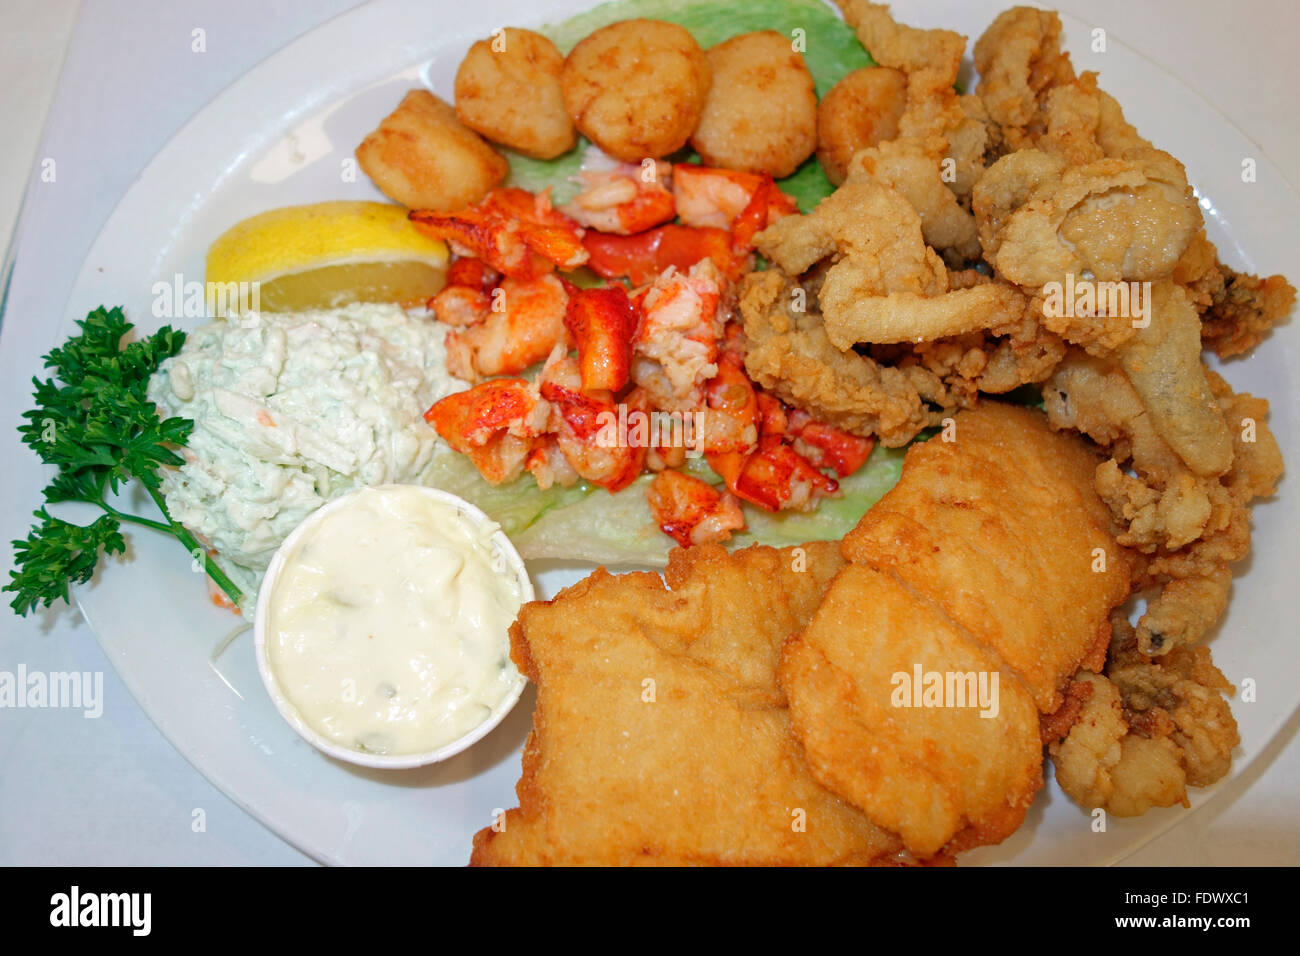 Un plateau de fruits de mer repas au restaurant montrant le homard, les palourdes frites, beignets de poisson frit, scollops coldslaw et aiglefin Banque D'Images